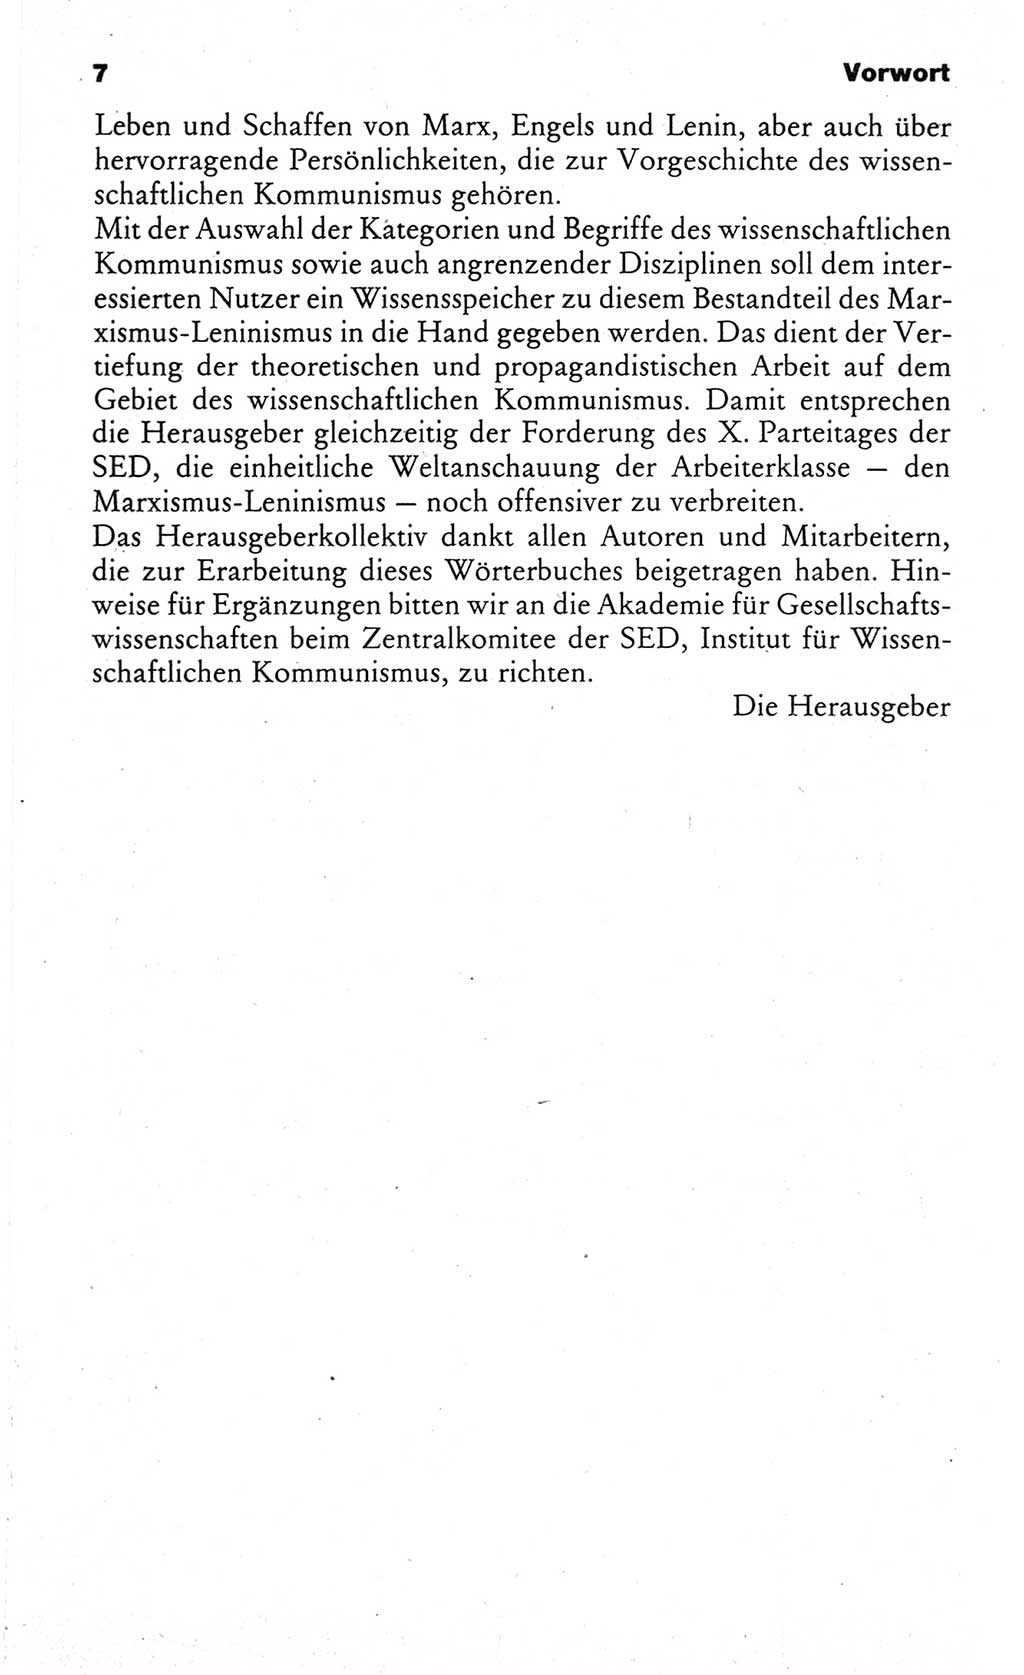 Wörterbuch des wissenschaftlichen Kommunismus [Deutsche Demokratische Republik (DDR)] 1984, Seite 7 (Wb. wiss. Komm. DDR 1984, S. 7)